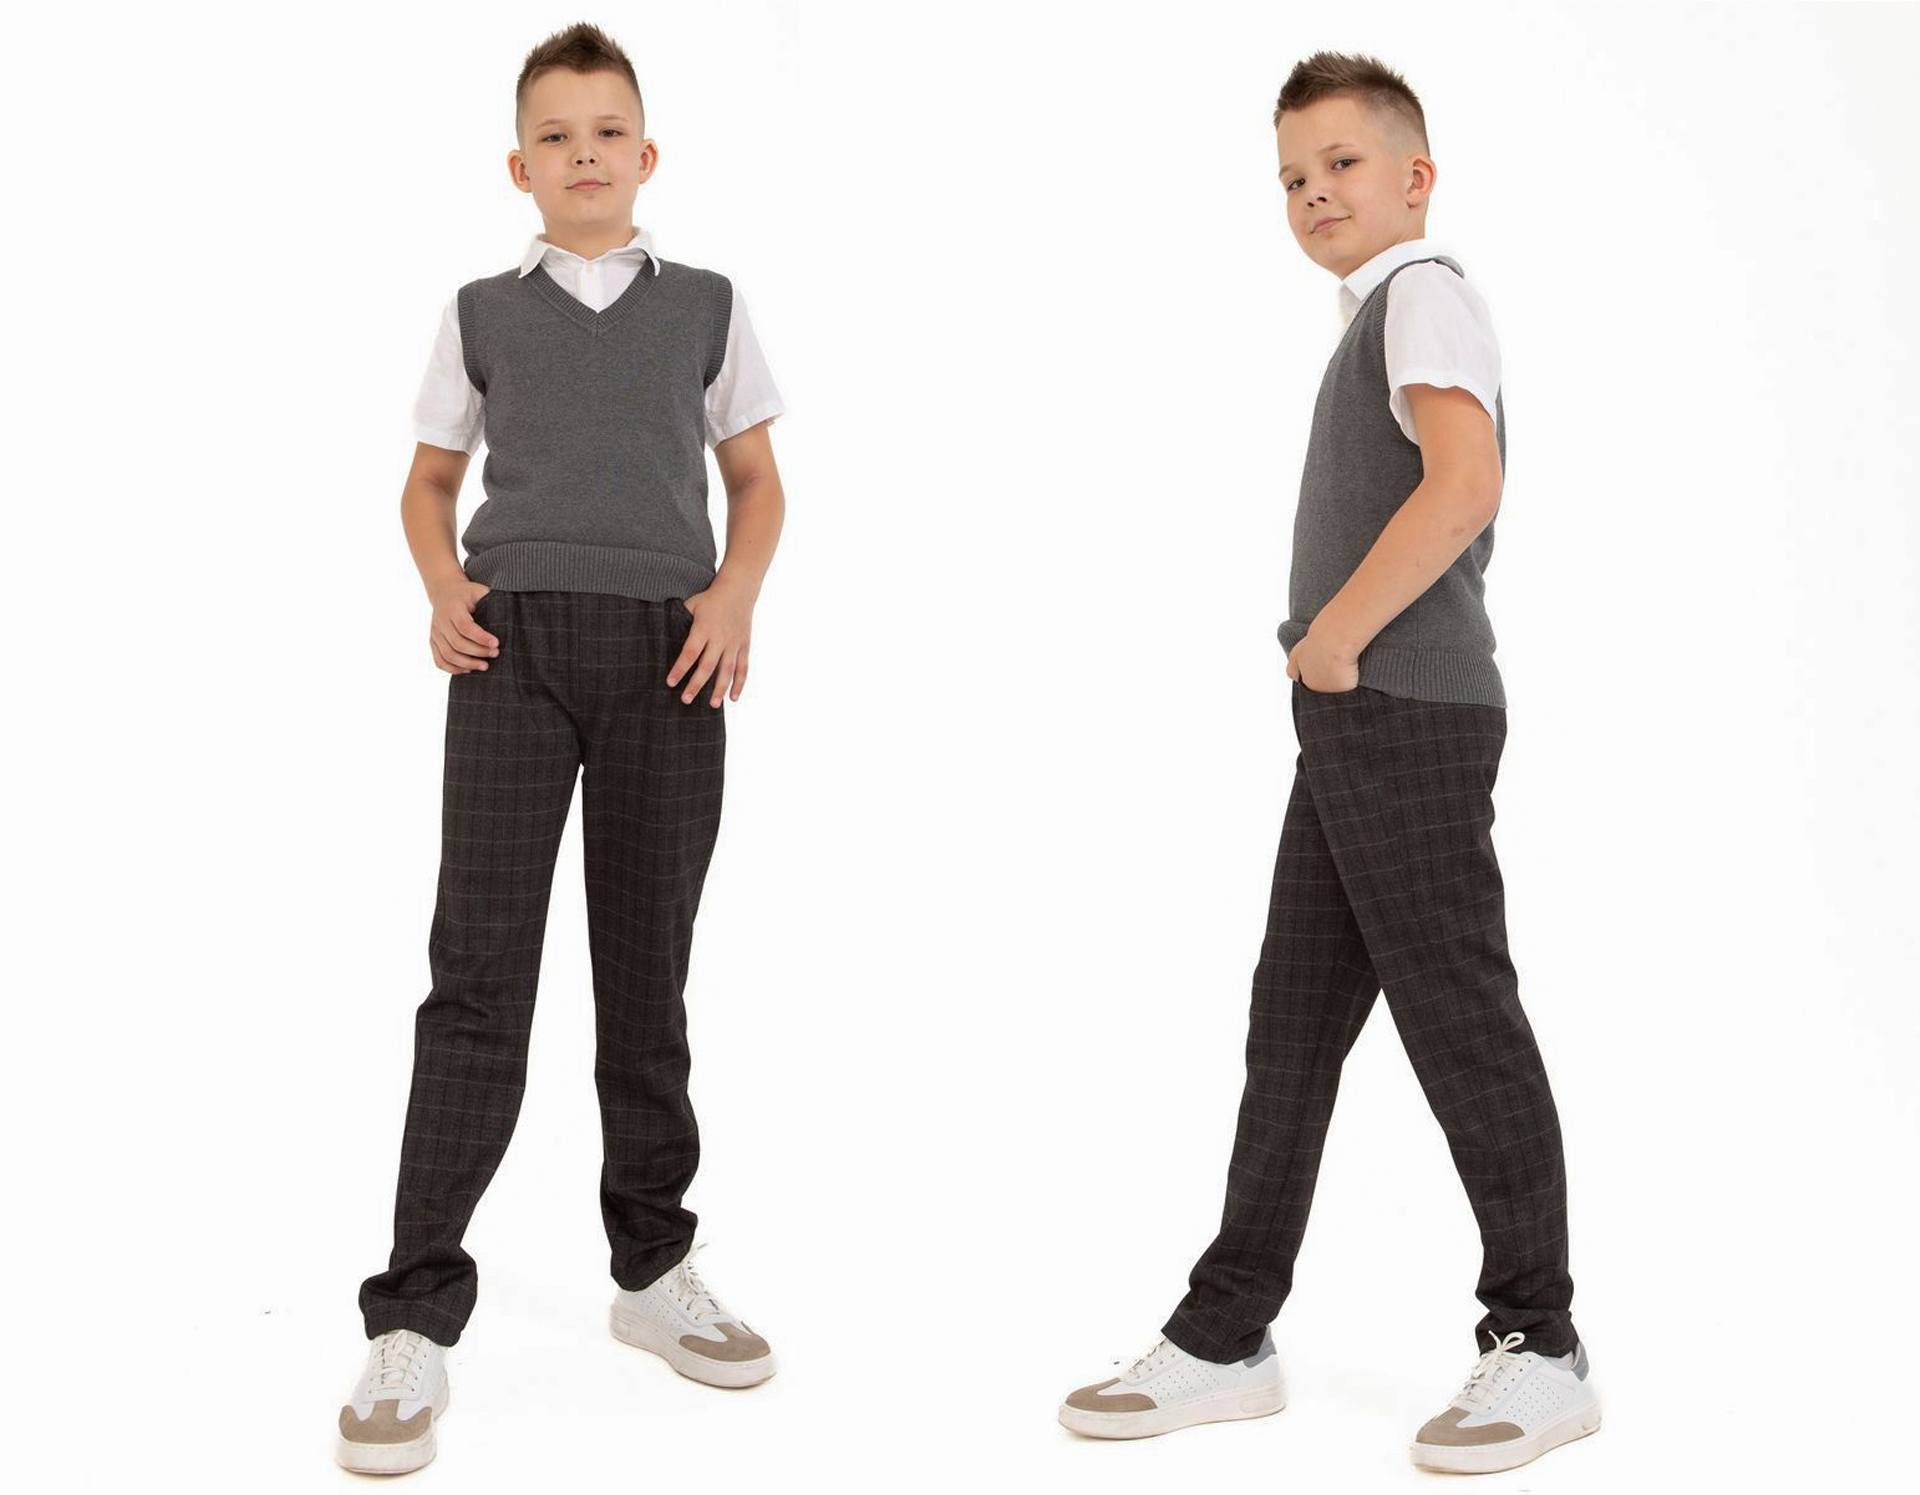 Вместо школьной формы: недорогая одежда для детей в деловом стиле